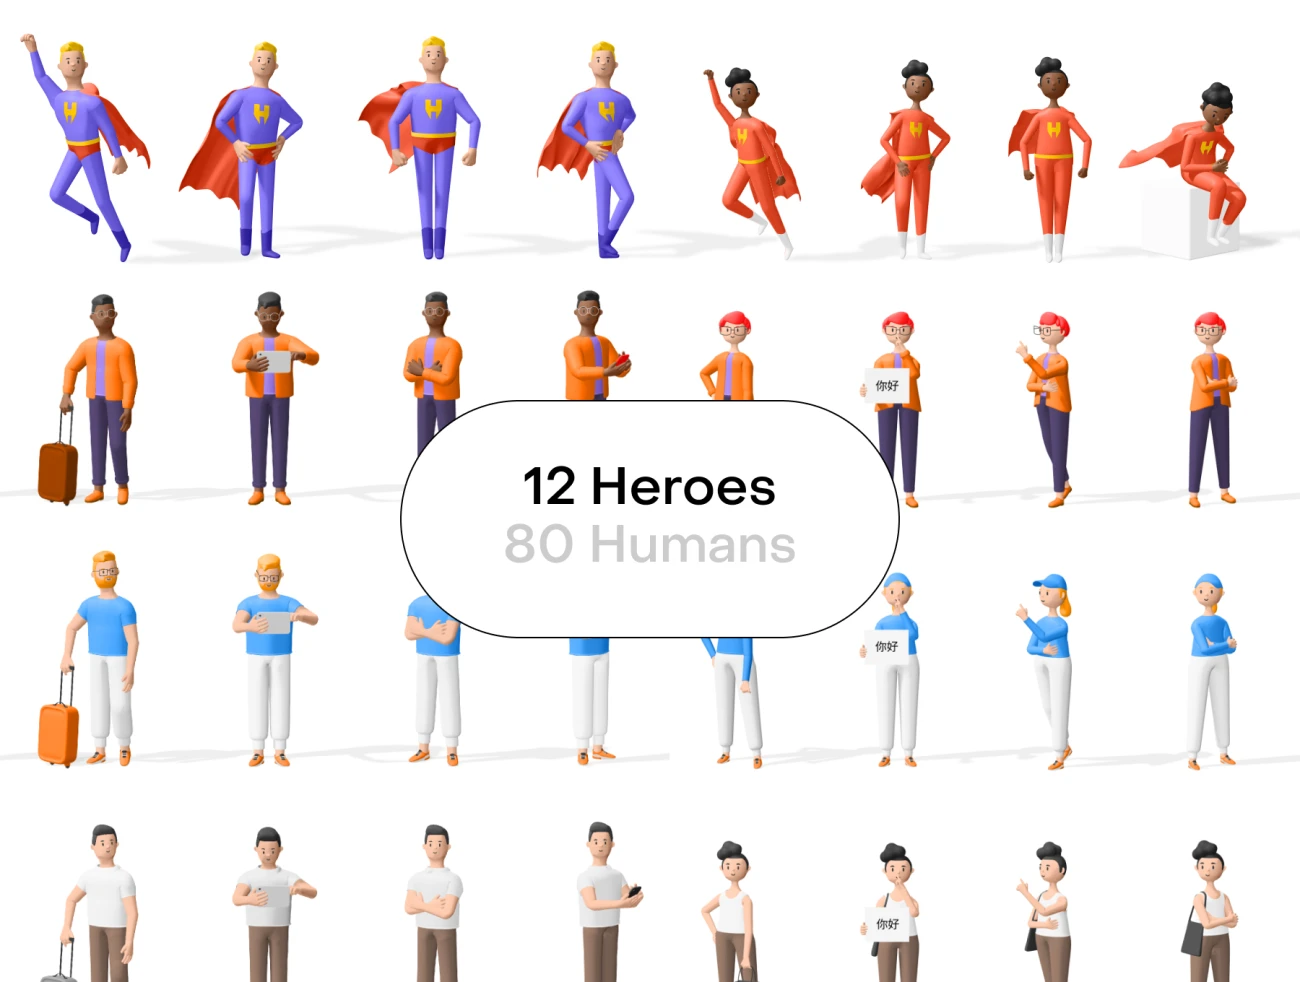 92个3D人物角色形象包含运动居家商务便装4种着装风格 Humans 3d characters v2.0插图11